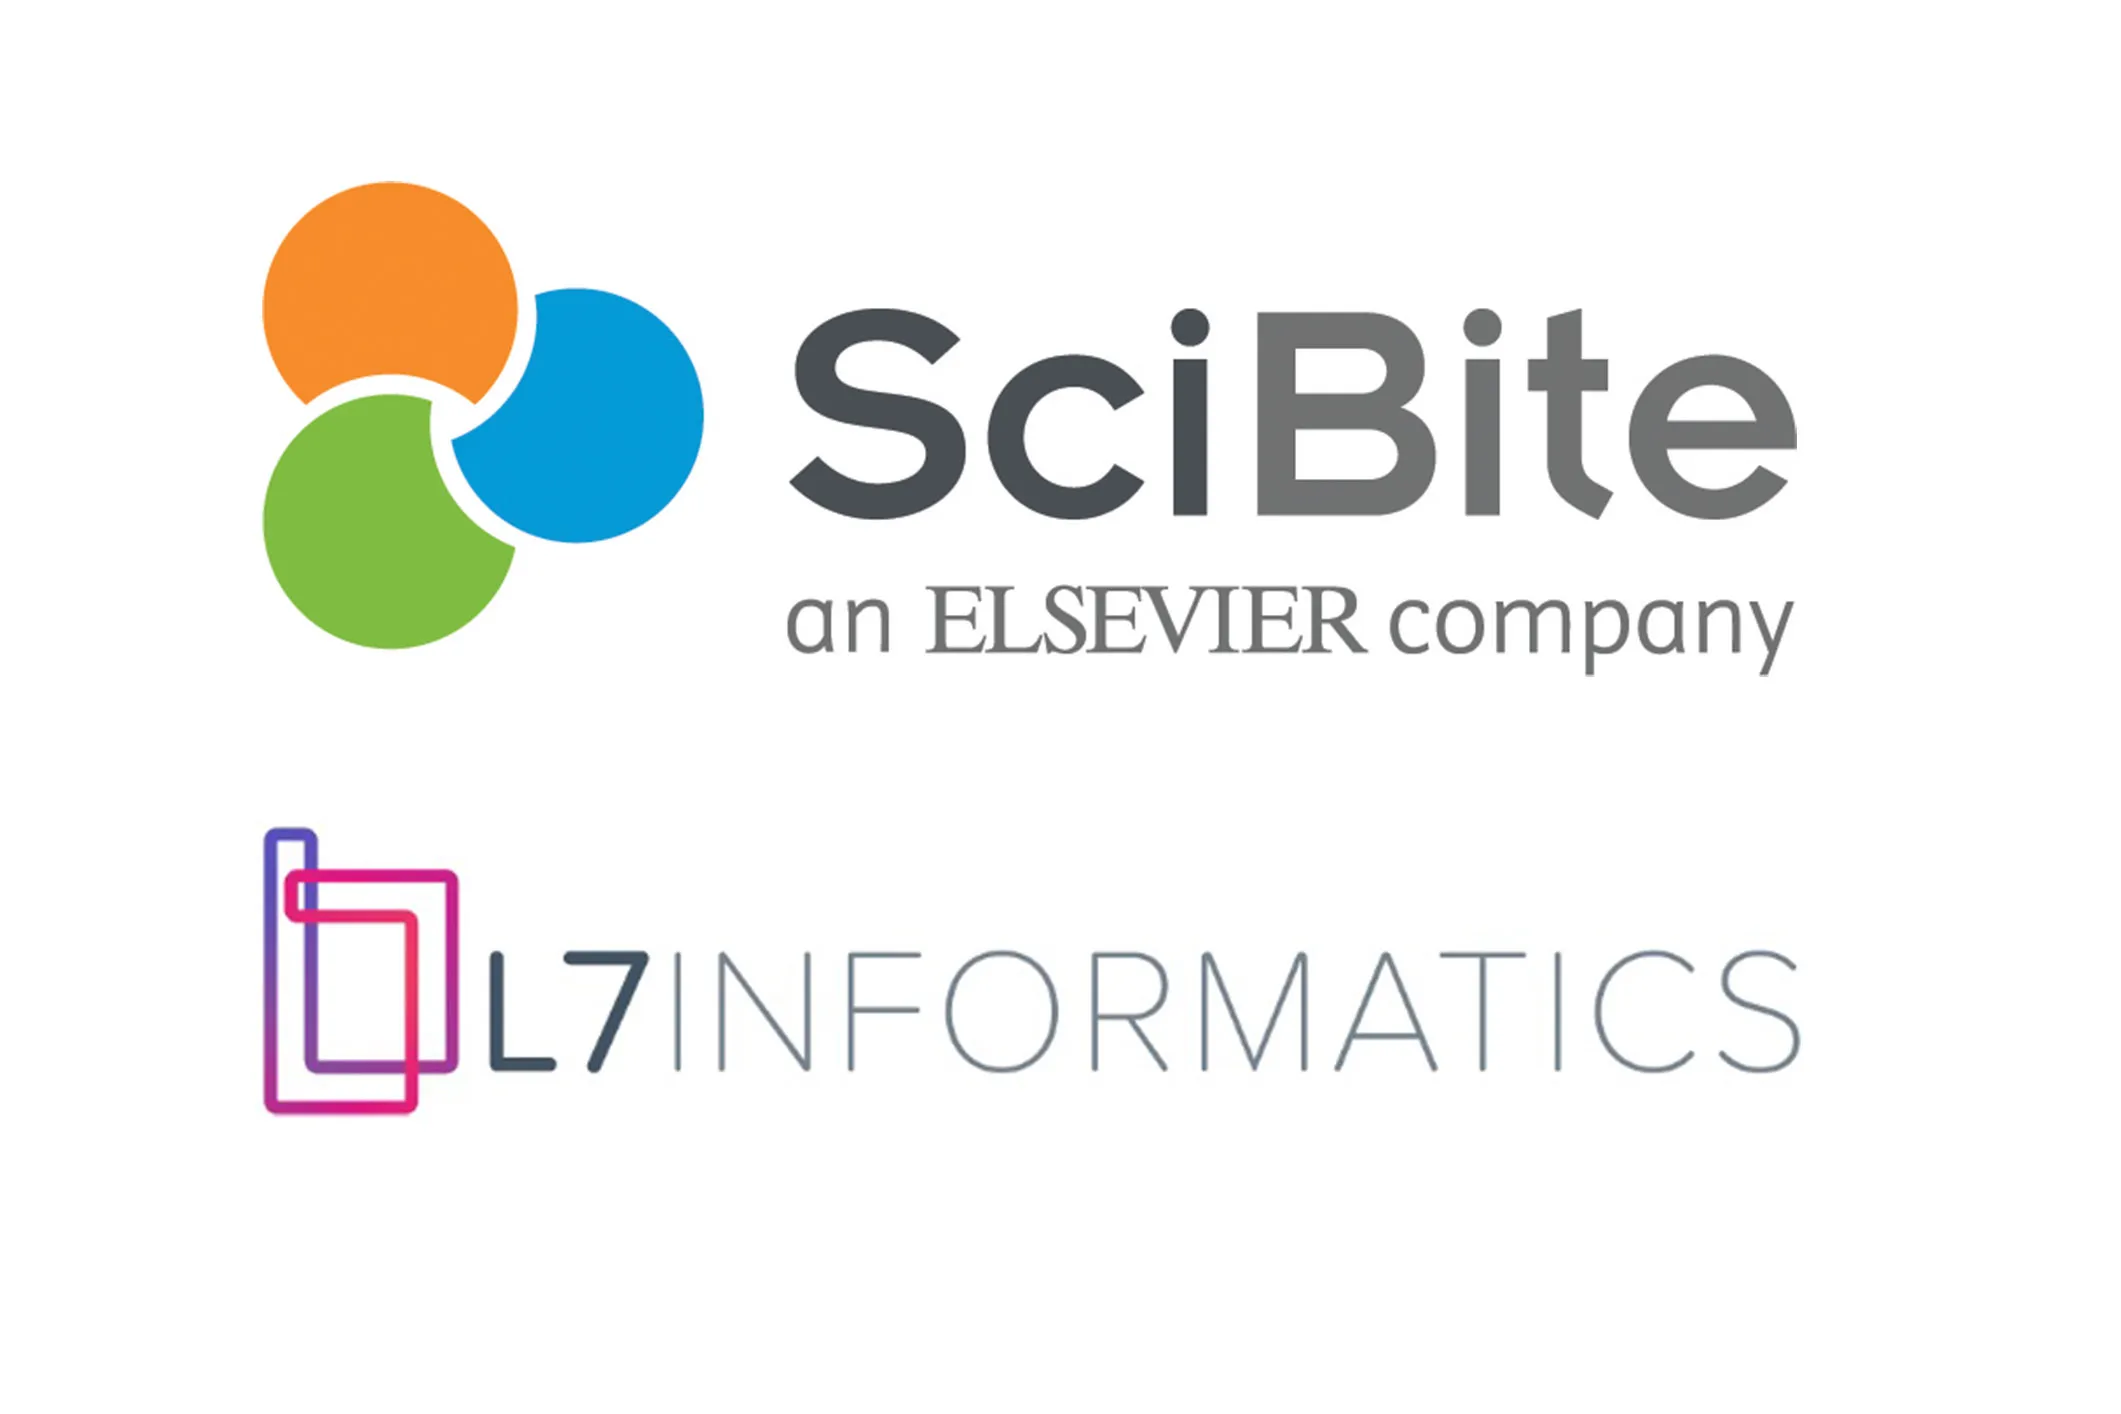 Logo - SciBite and L7 Informatics